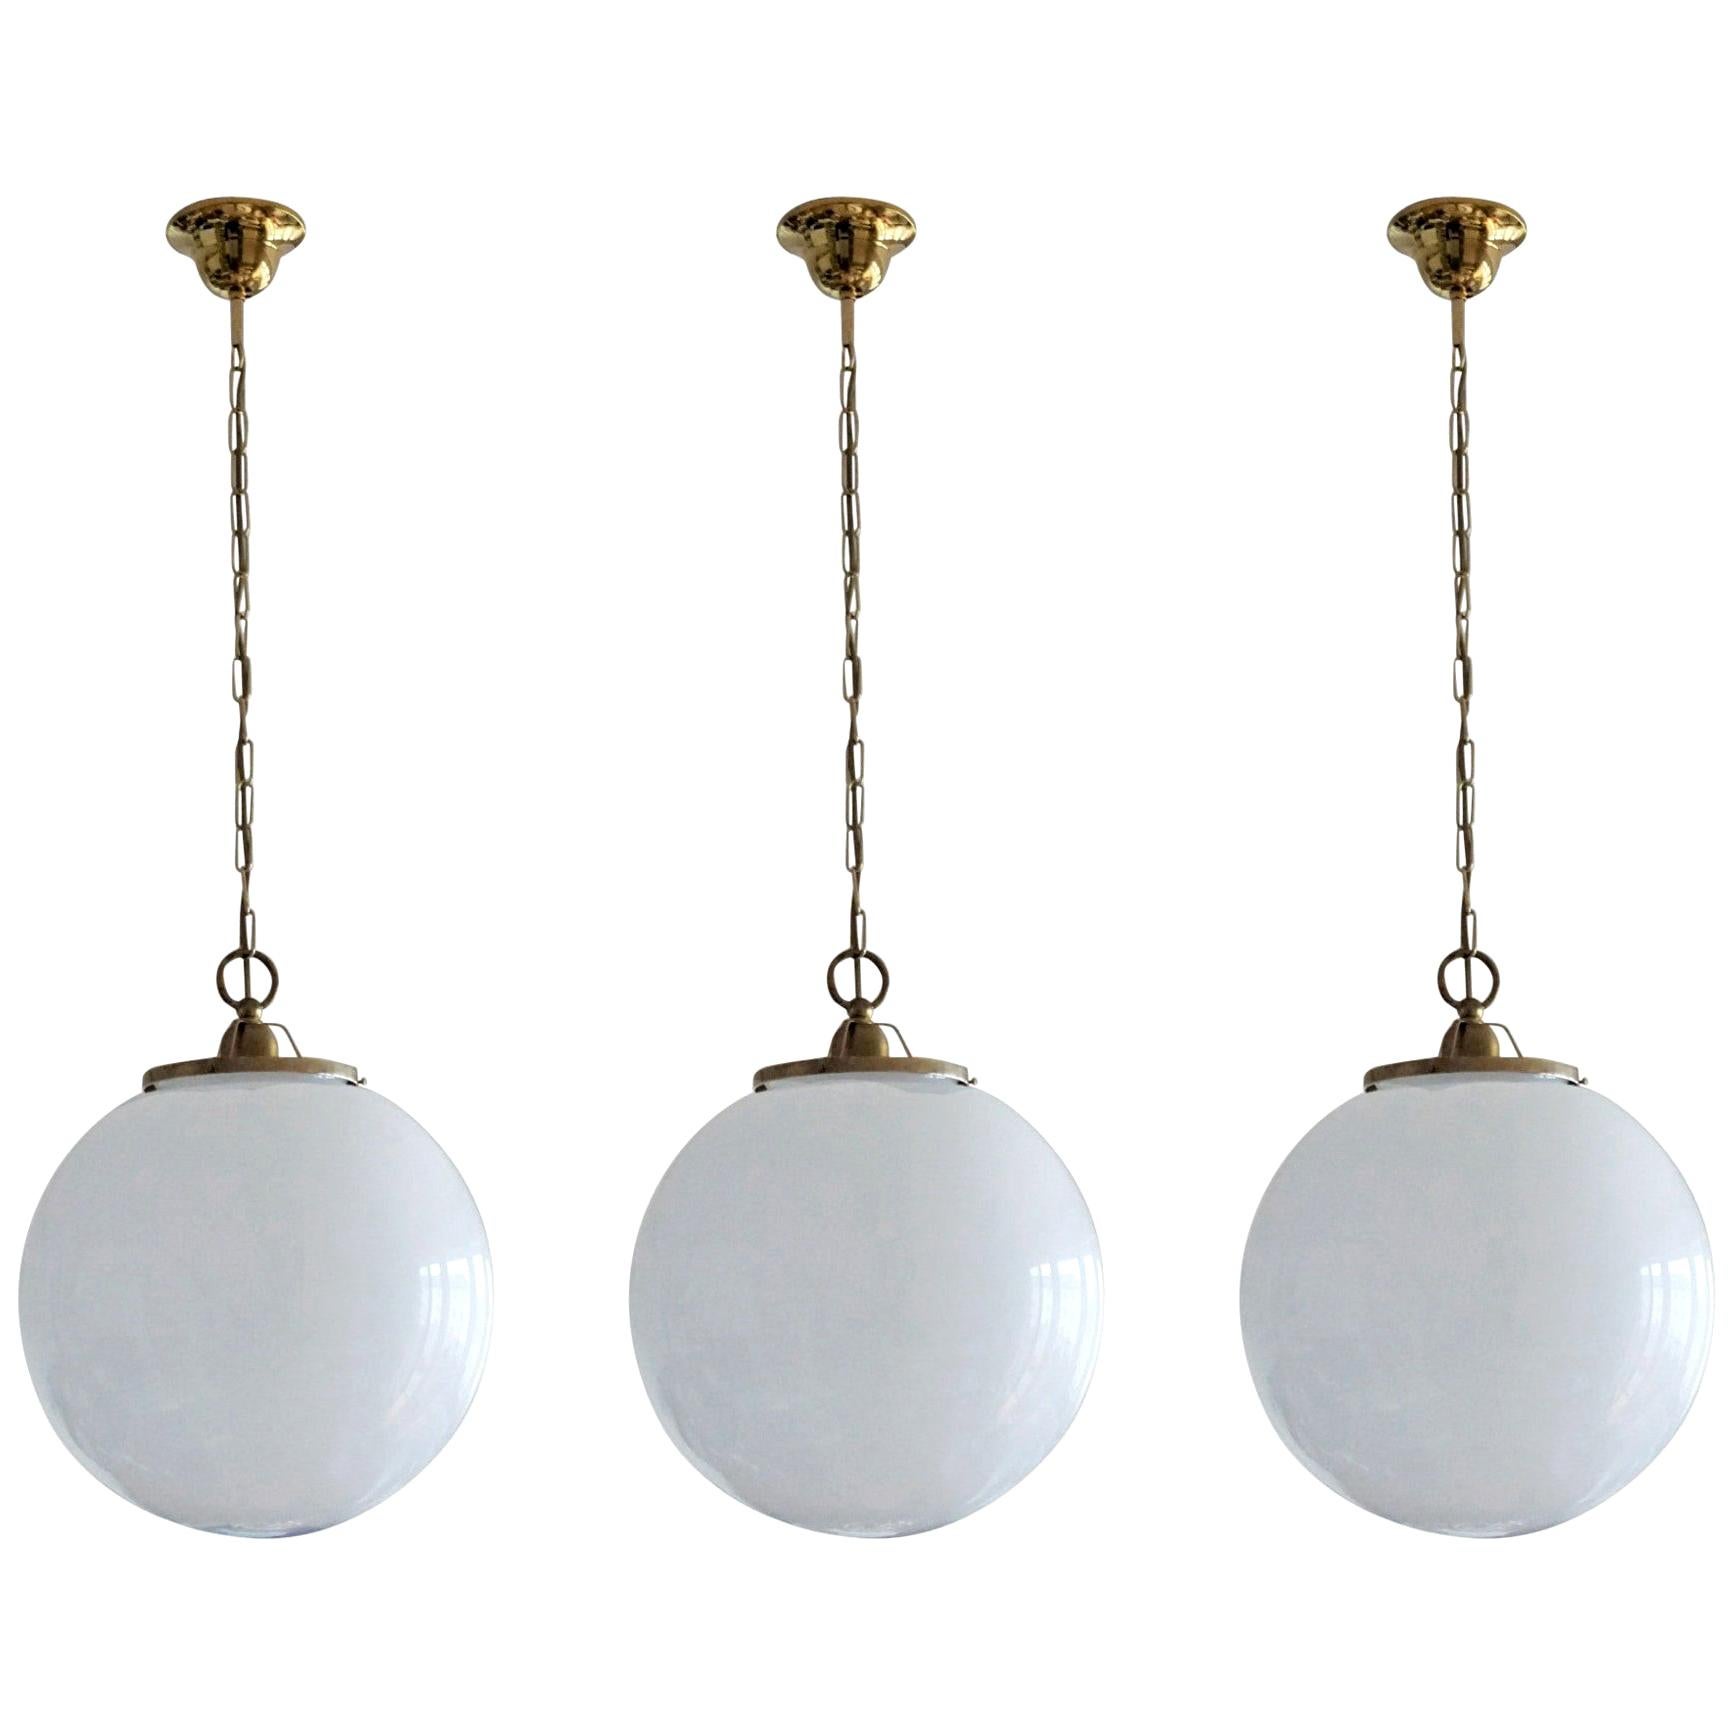 Ensemble de trois grandes boules italiennes en verre opalin soufflé à la main, montées sur laiton, avec une seule douille E-27 pour une ampoule de grande taille, années 1950
Mesures : Diamètre 14